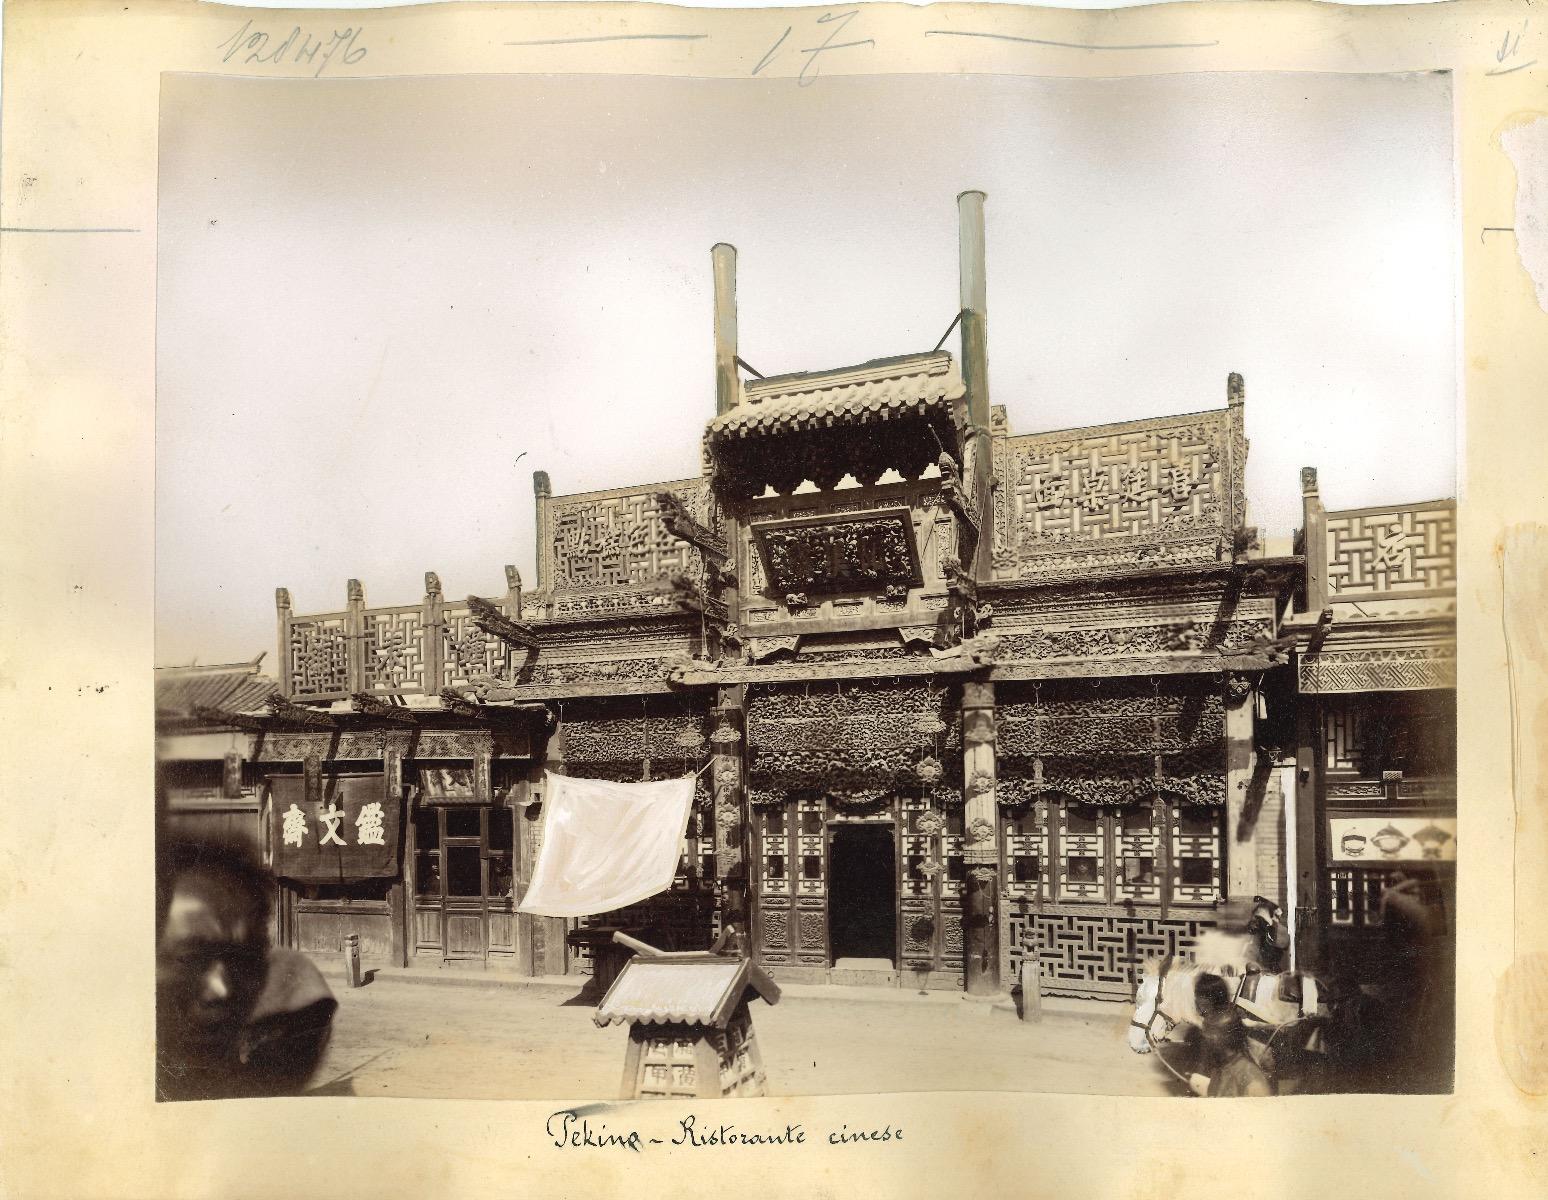 Unknown Landscape Photograph - Ancient Views of Beijing - Original Albumen Print - 1890s